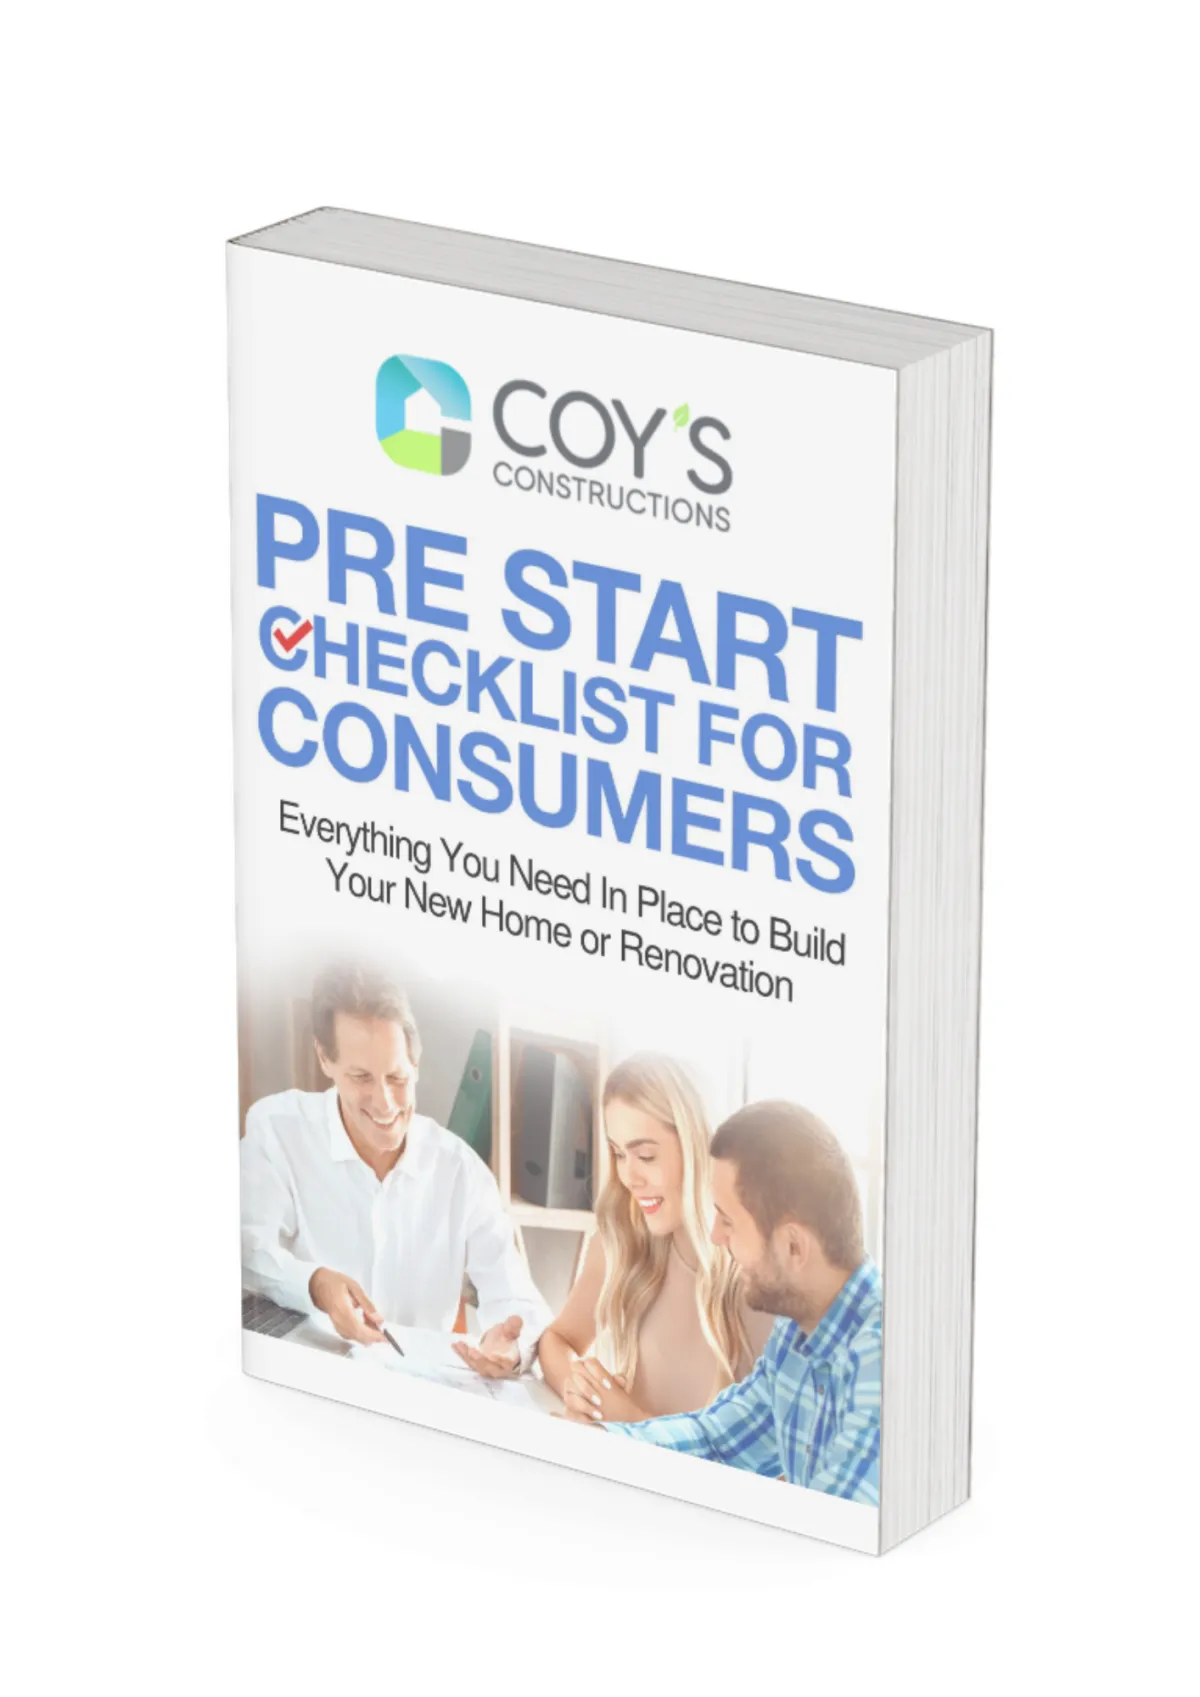 Pre Start Checklist for Consumers